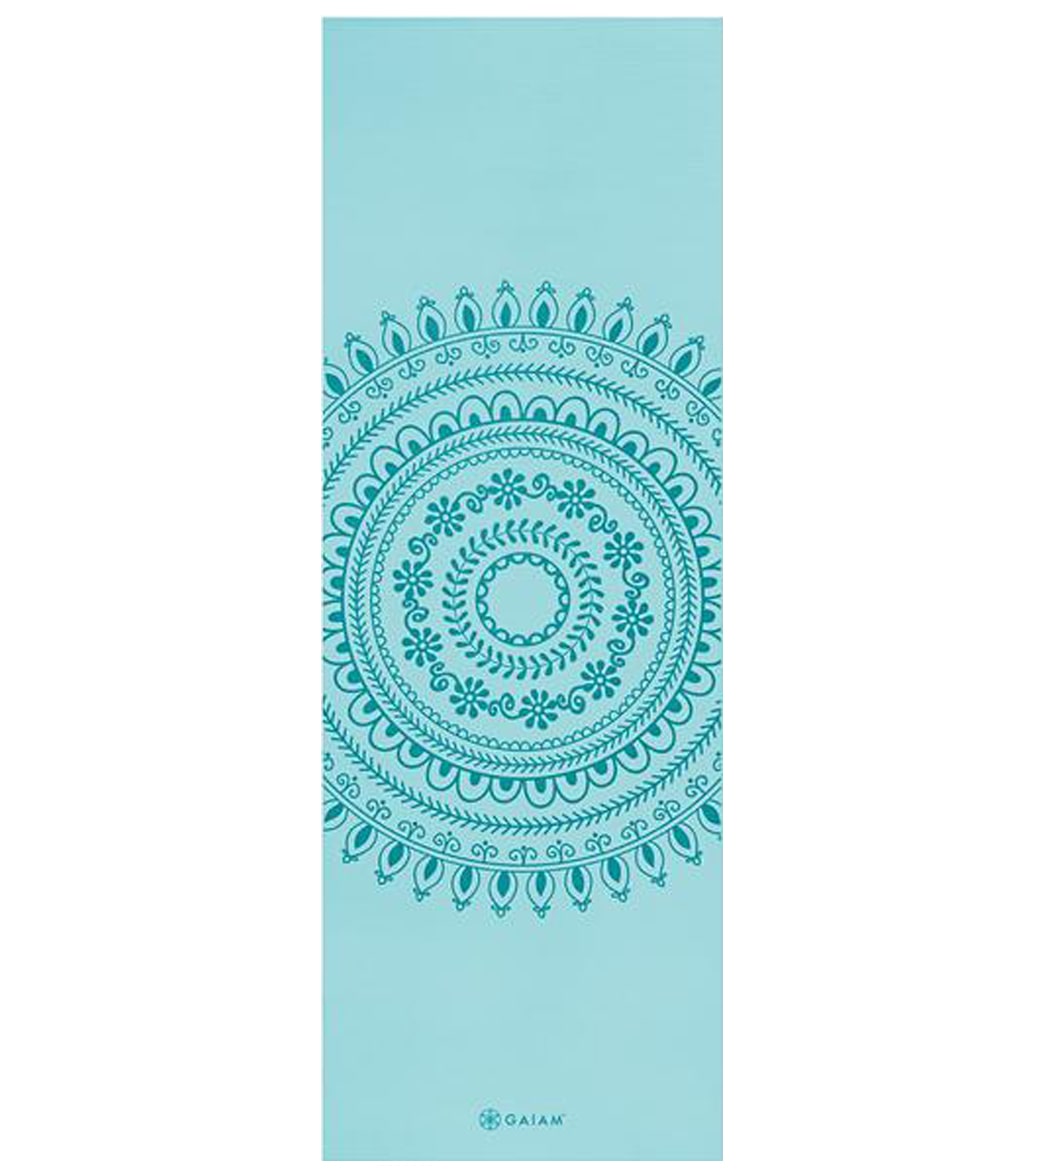 Gaiam Reversible Yoga Mat - Teal Mandala Mantra (6mm)